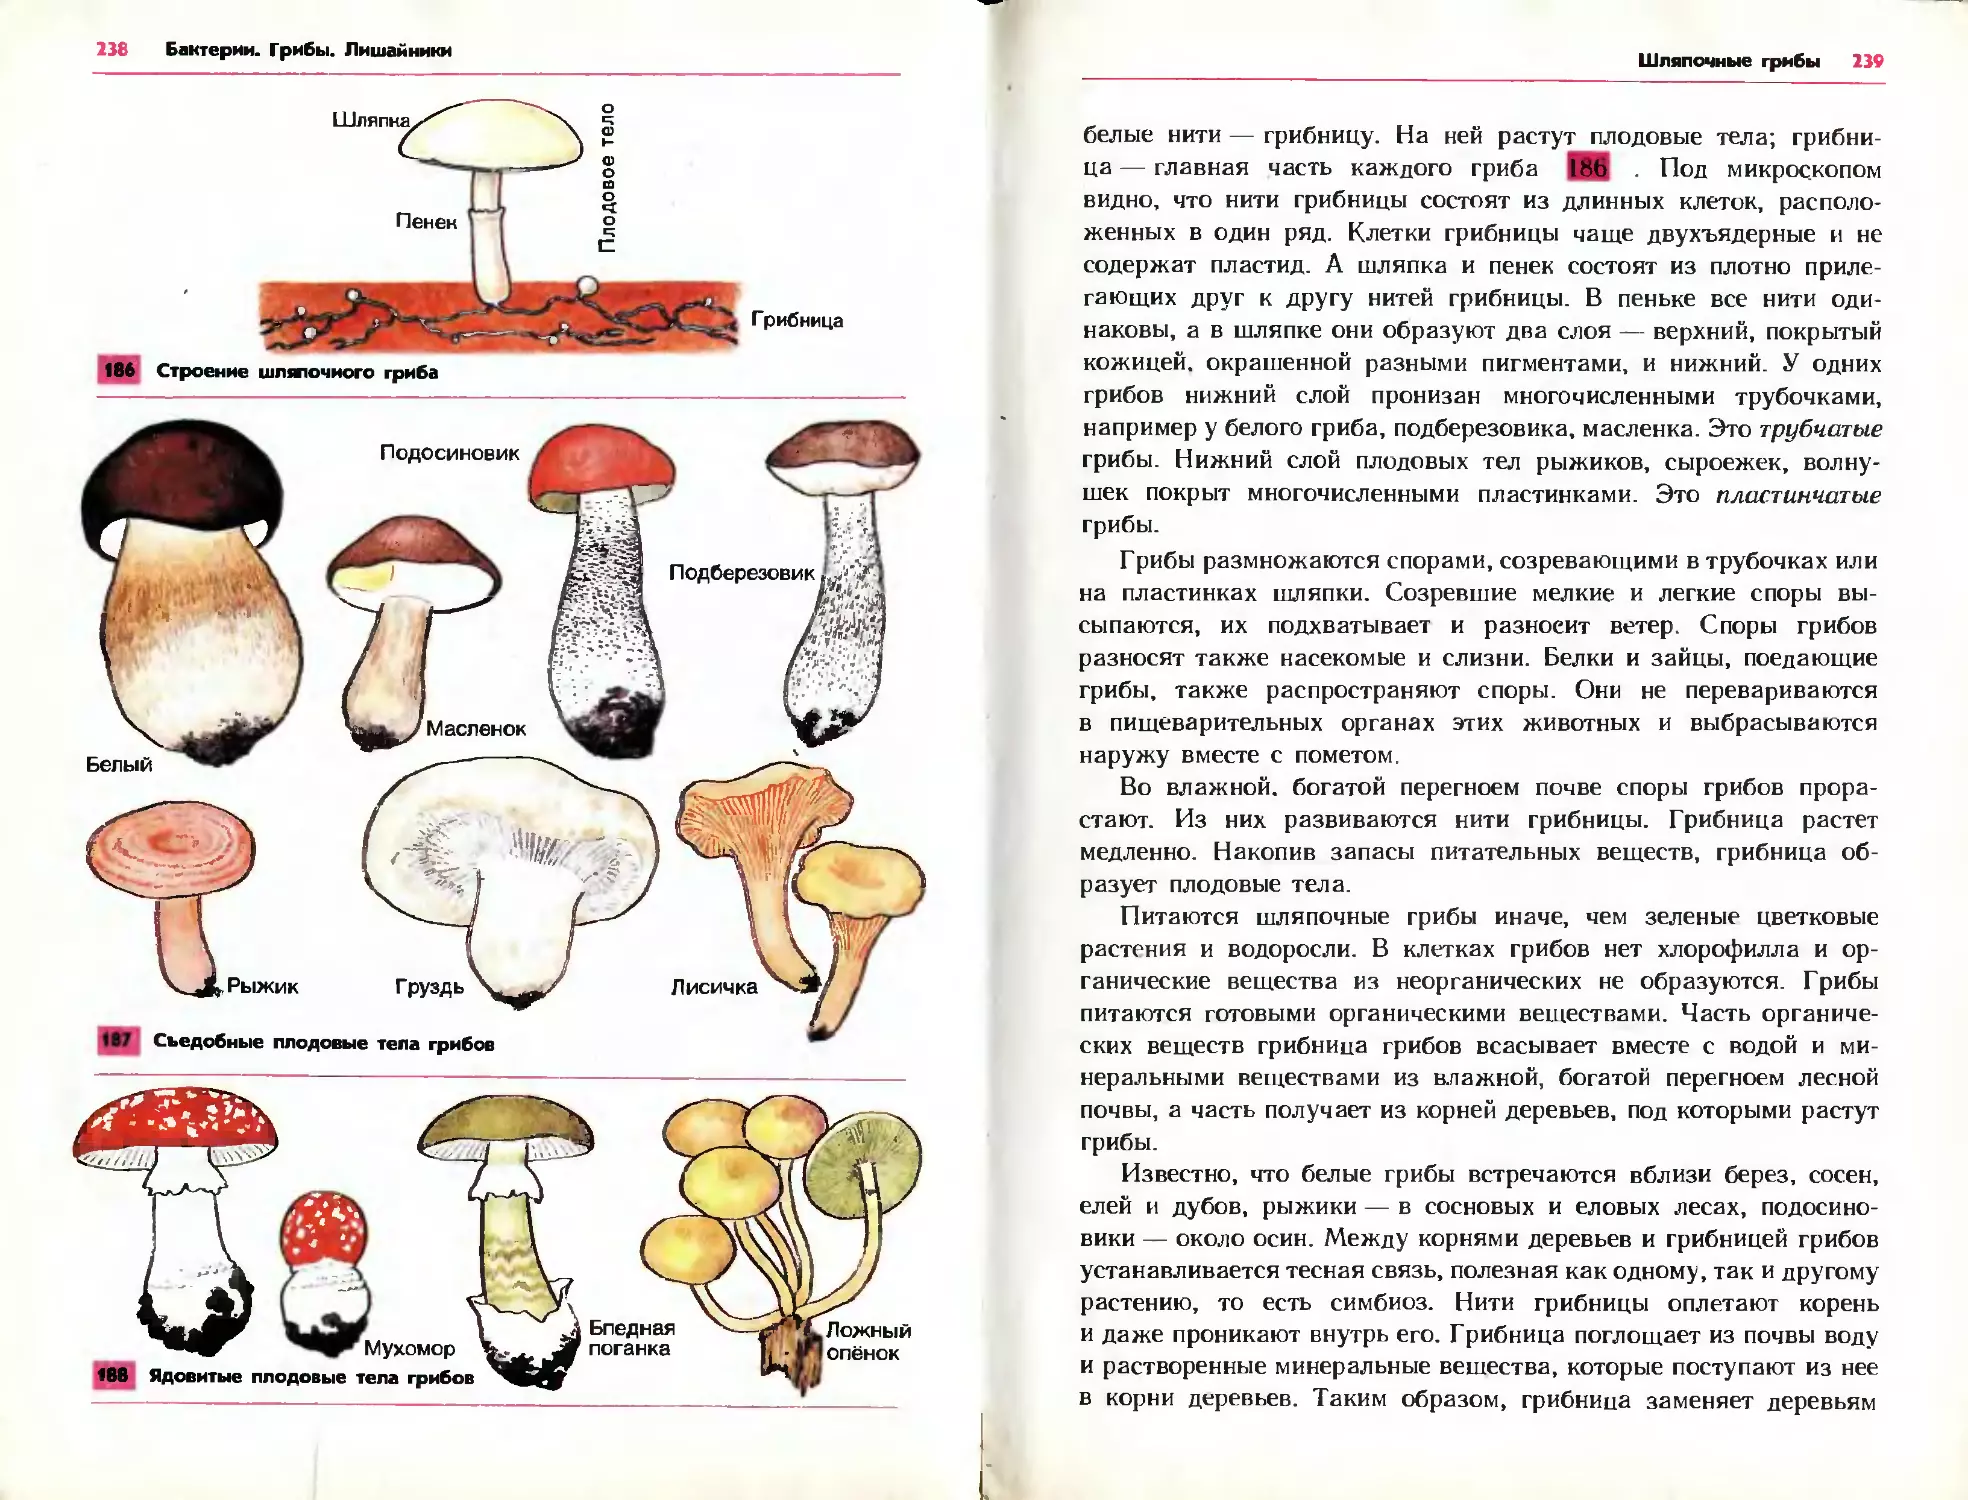 Шляпочные грибы водоросли. Споры трубчатых грибов. Шляпочные грибы. Споры у шляпочных грибов образуются. Споры на пластинках плодового тела образуются у какого гриба.